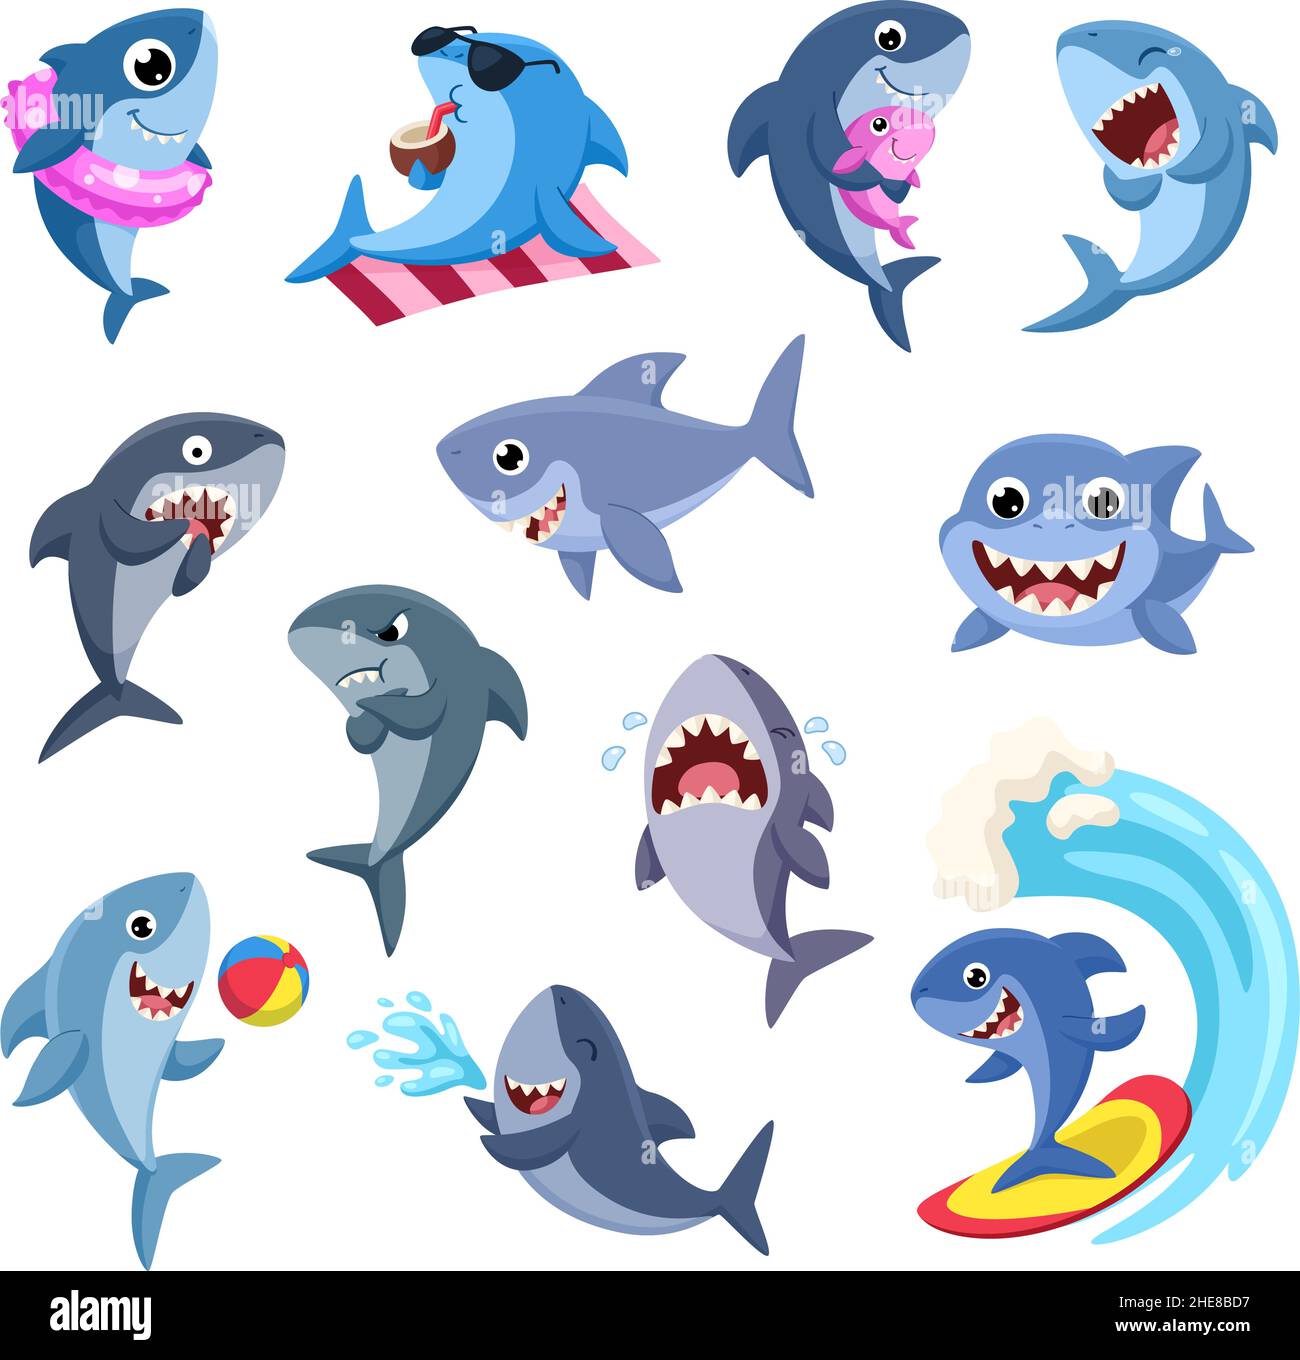 Tiburón de dibujos animados. Tiburones divertidos, depredadores del mar.  Personajes de la fauna marina. Peces de color rosa y azul con el bebé,  sonreír animales de agua para los niños, garish vector